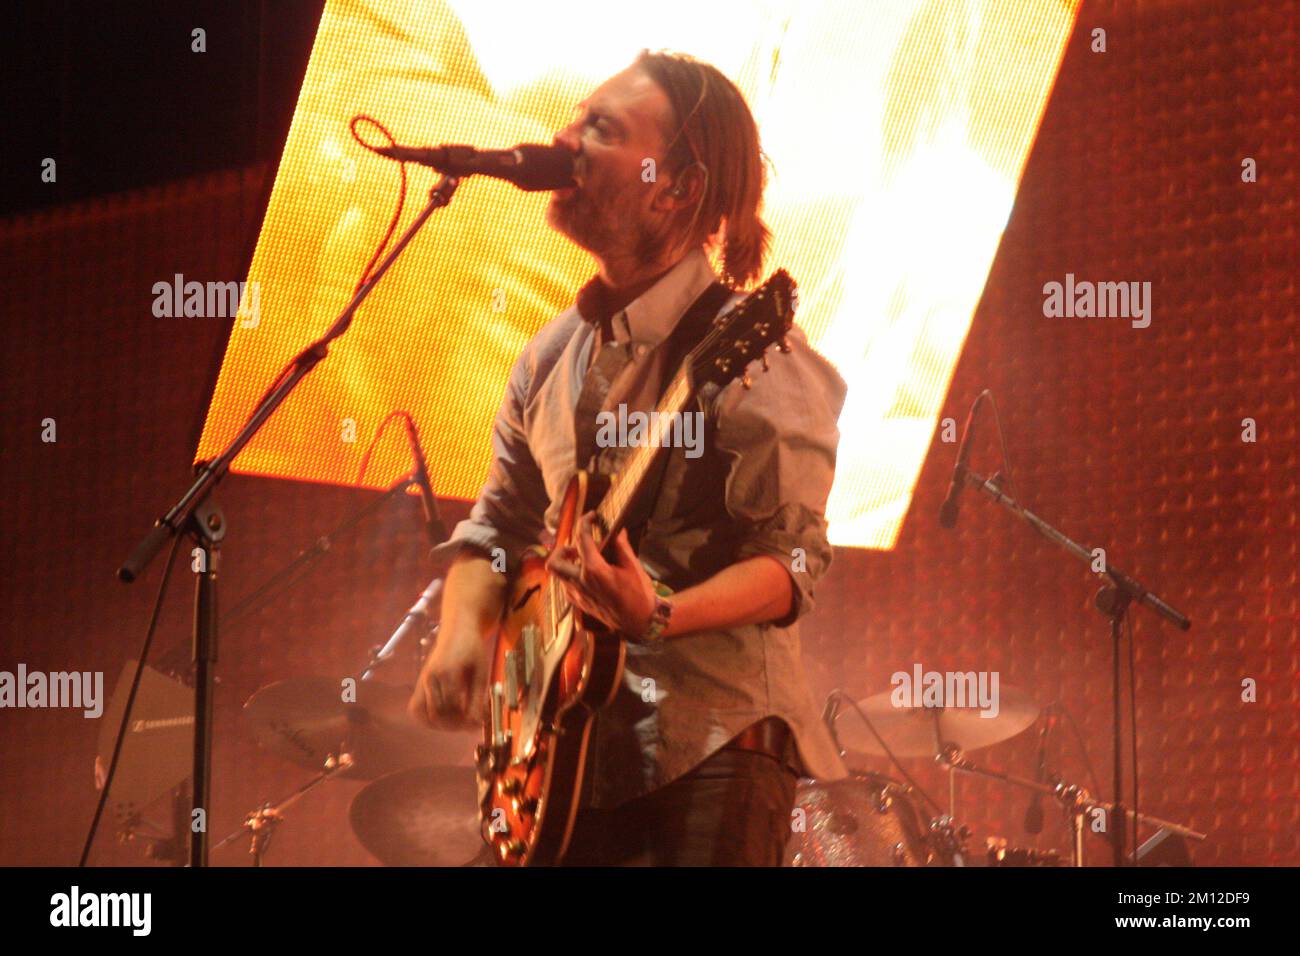 Coachella - Radiohead in concert Stock Photo